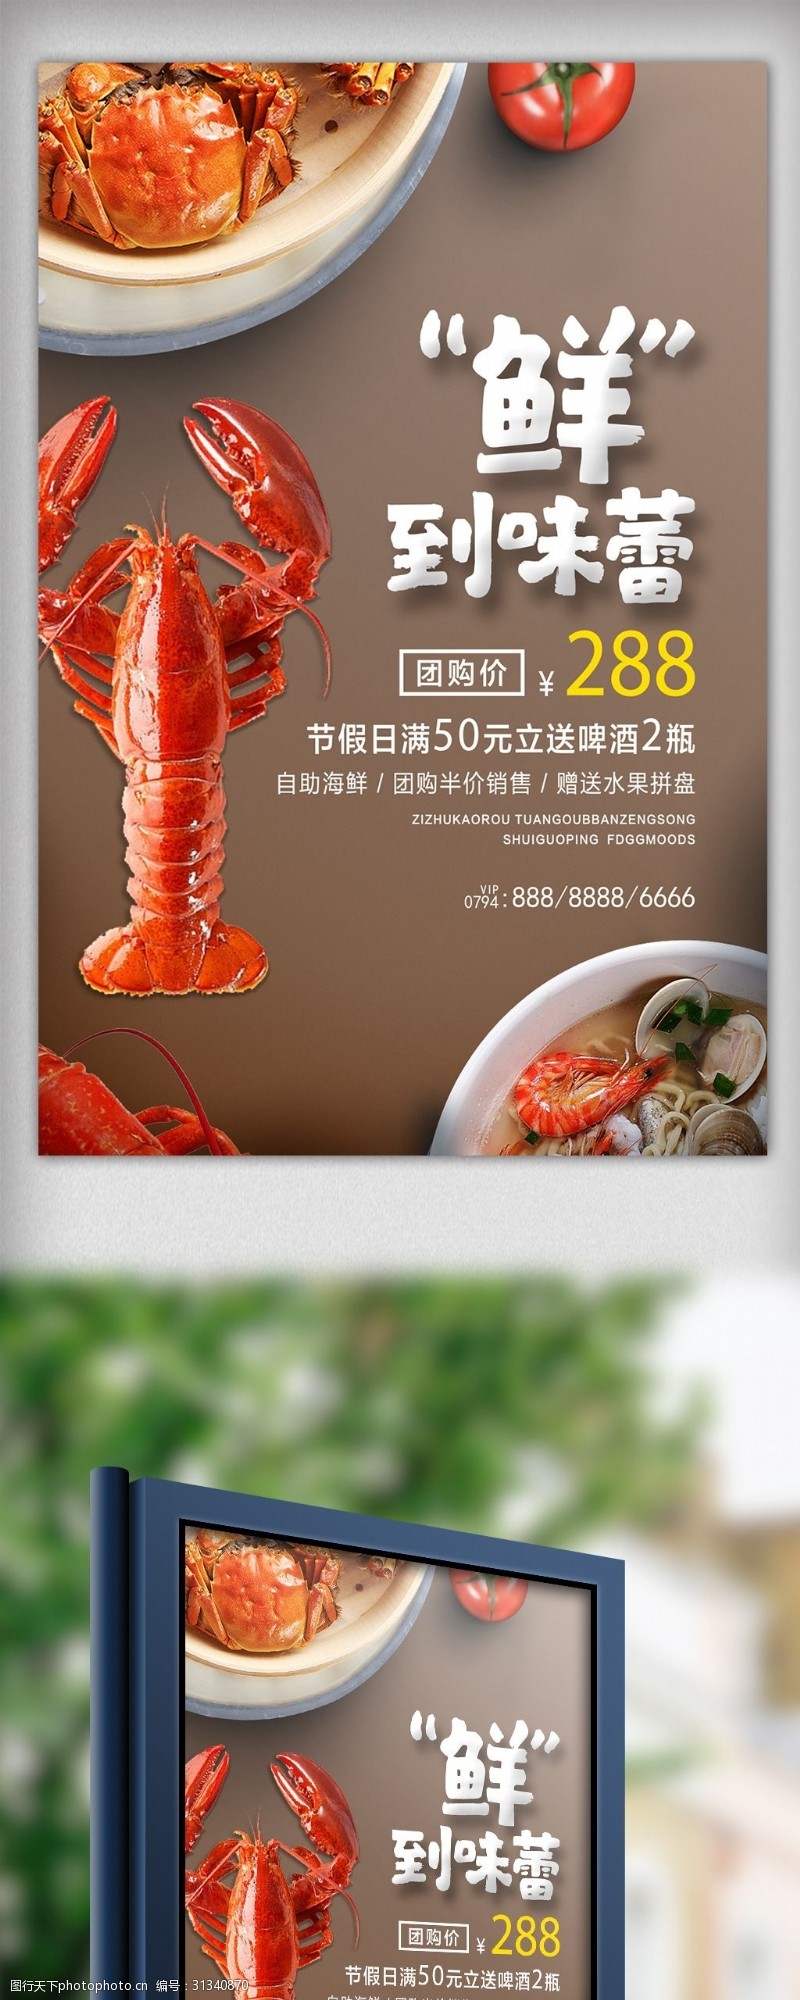 大闸蟹促销创意时尚海鲜特惠促销宣传海报设计模板